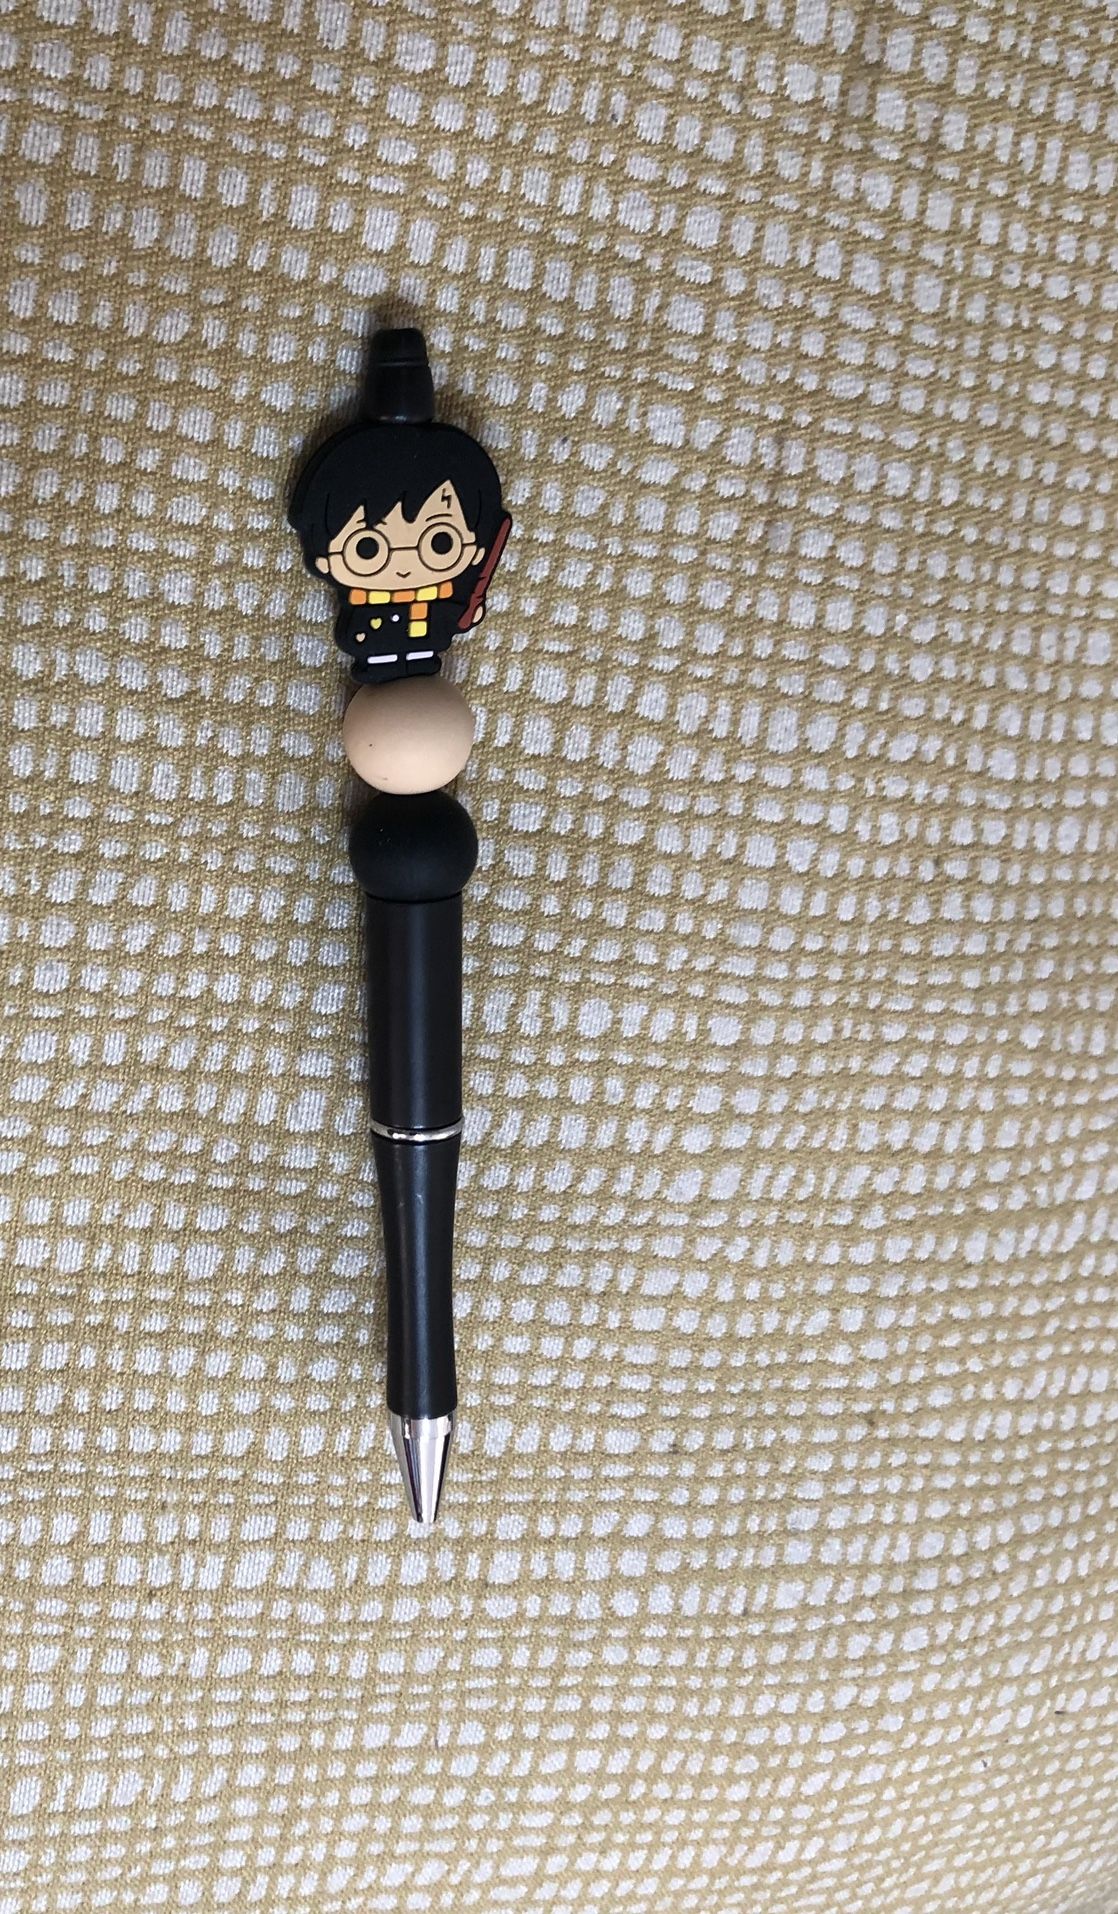 Harry Potter beads pen black. Size  6”LX 1” W